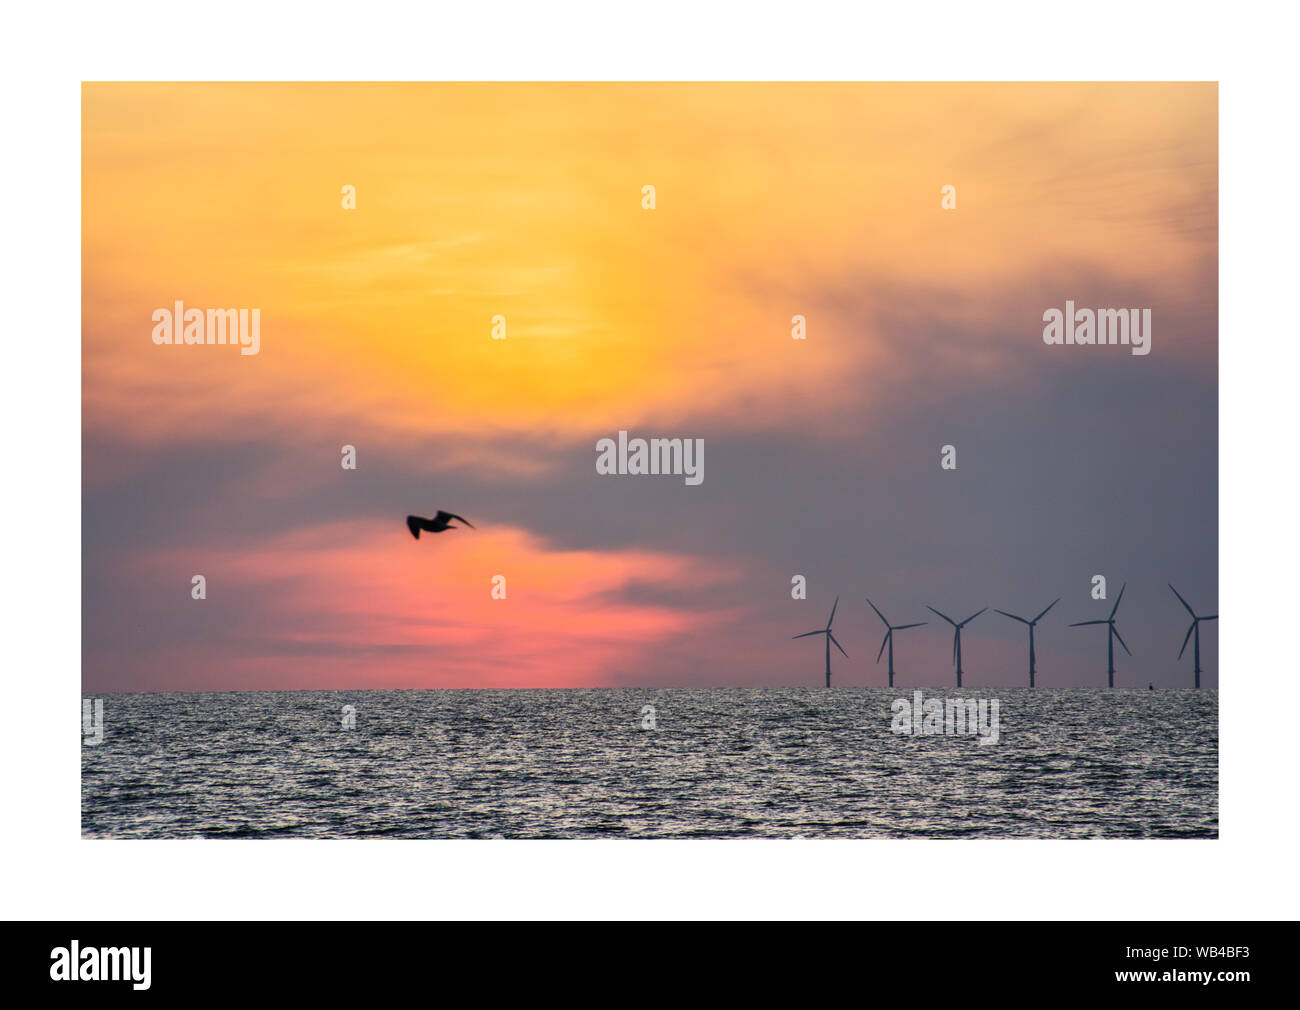 Pájaro volando sobre el mar. aerogeneradores en el fondo Foto de stock